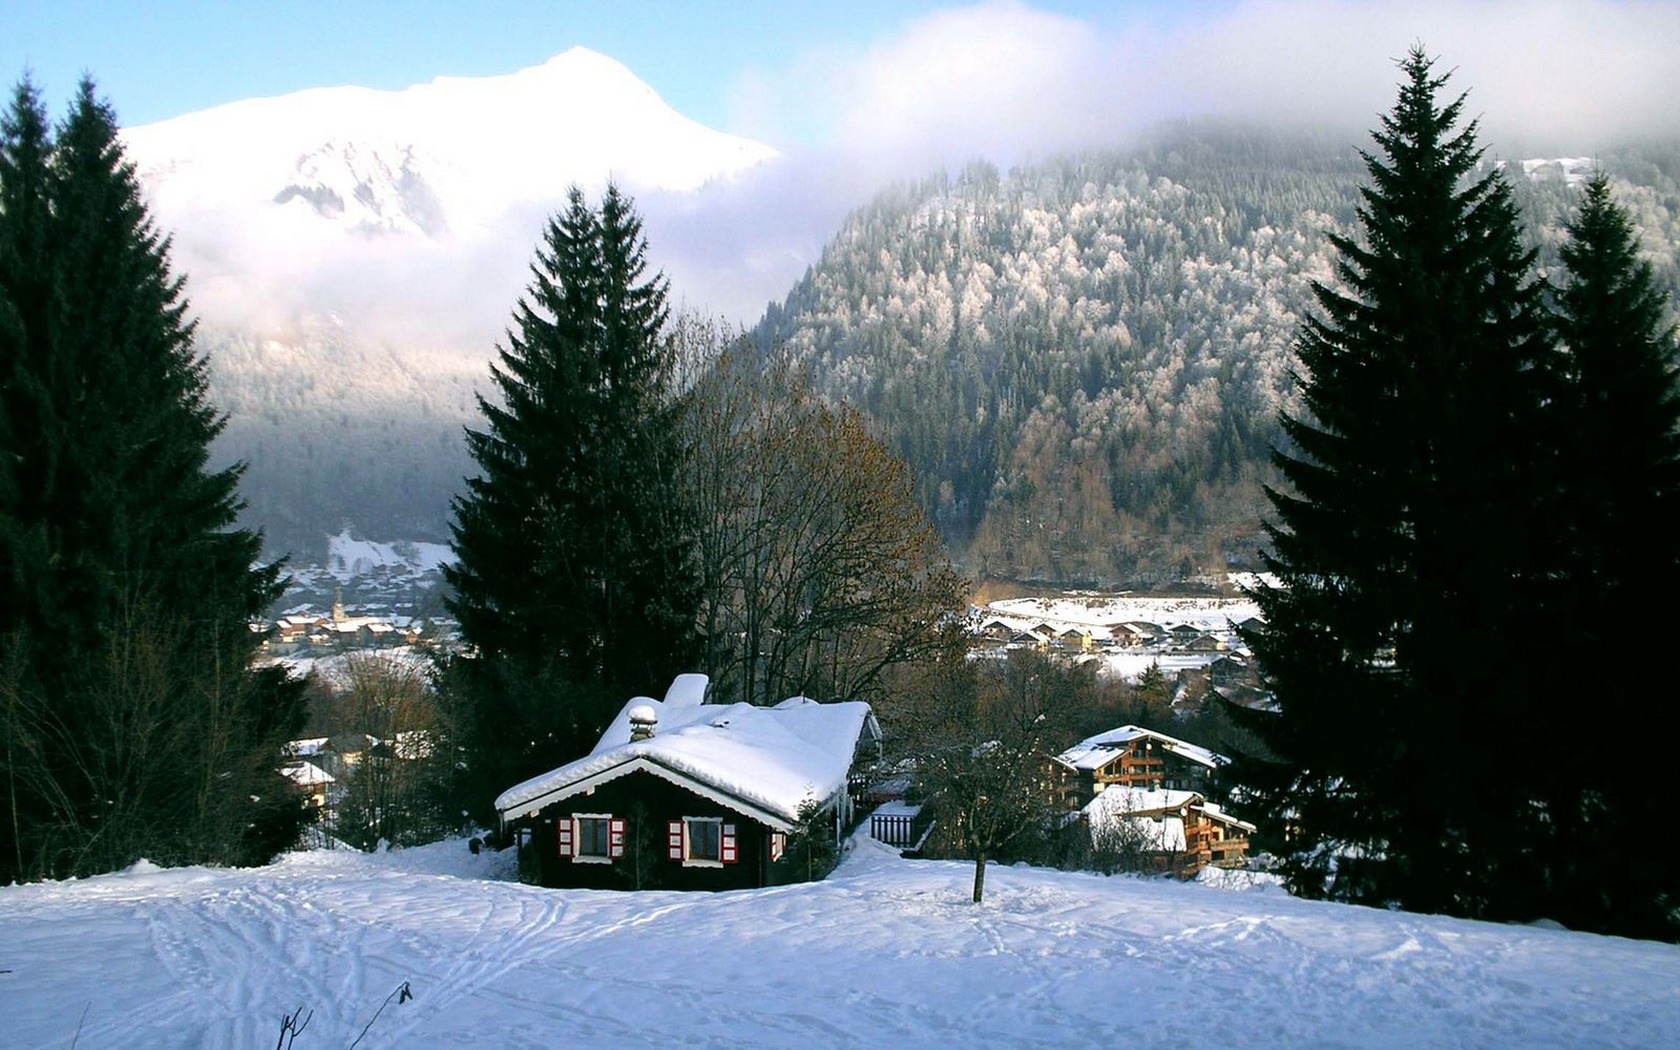 Скачать картинку Зима, Снег, Гора, Лес, Дерево, Дом, Фотографии в телефон бесплатно.